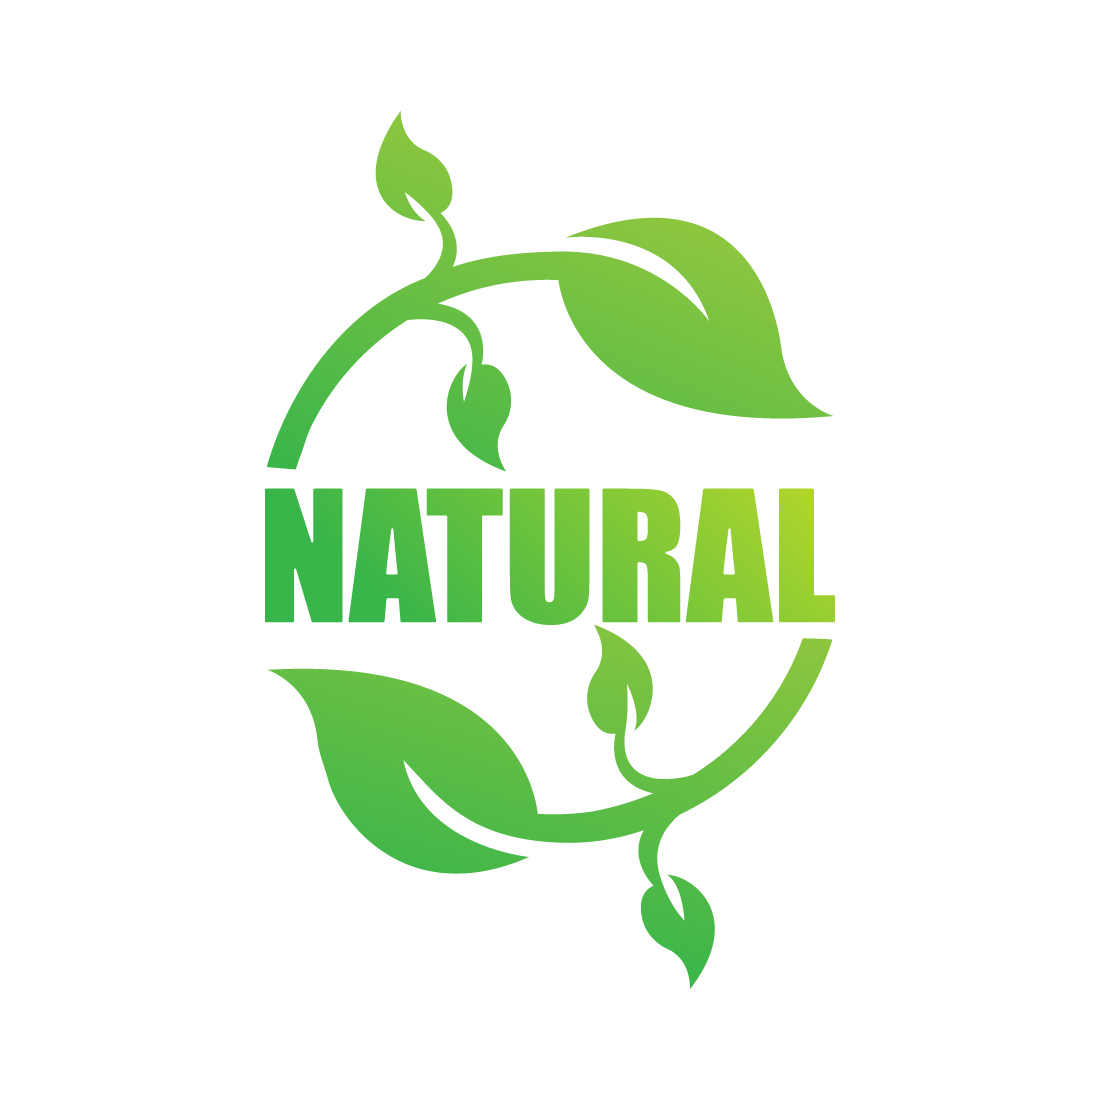 Natural leaf logo design vector icon Green leaf logo best icon Natural Food logo template arts Green Vegetable logo monogram illustration preview image.